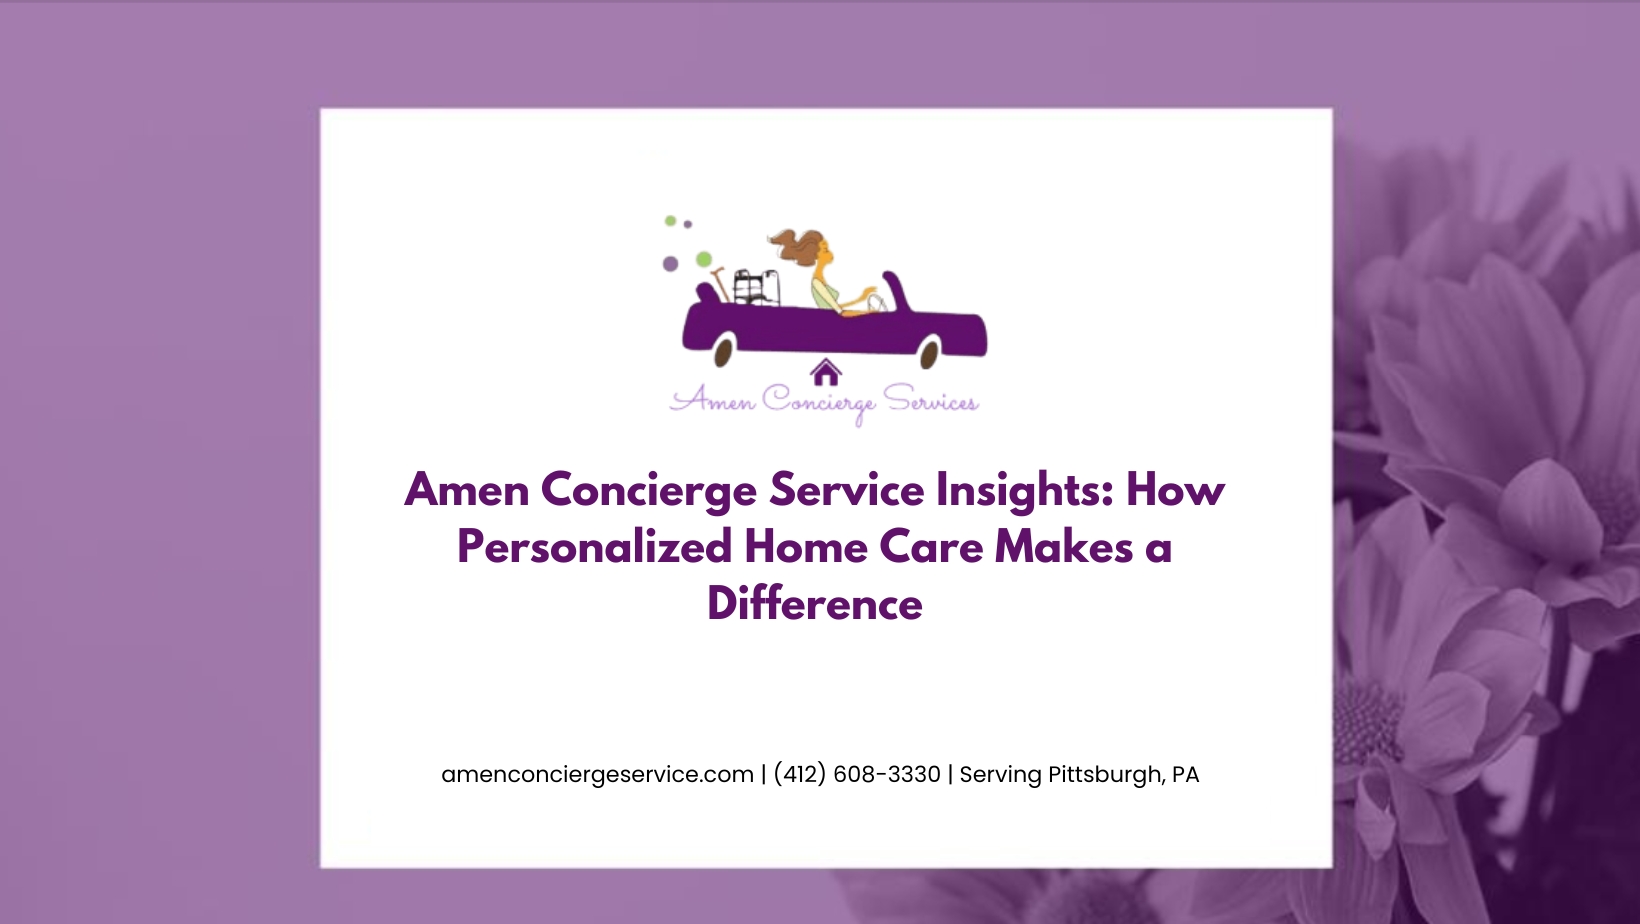 amen-concierge-service-insights